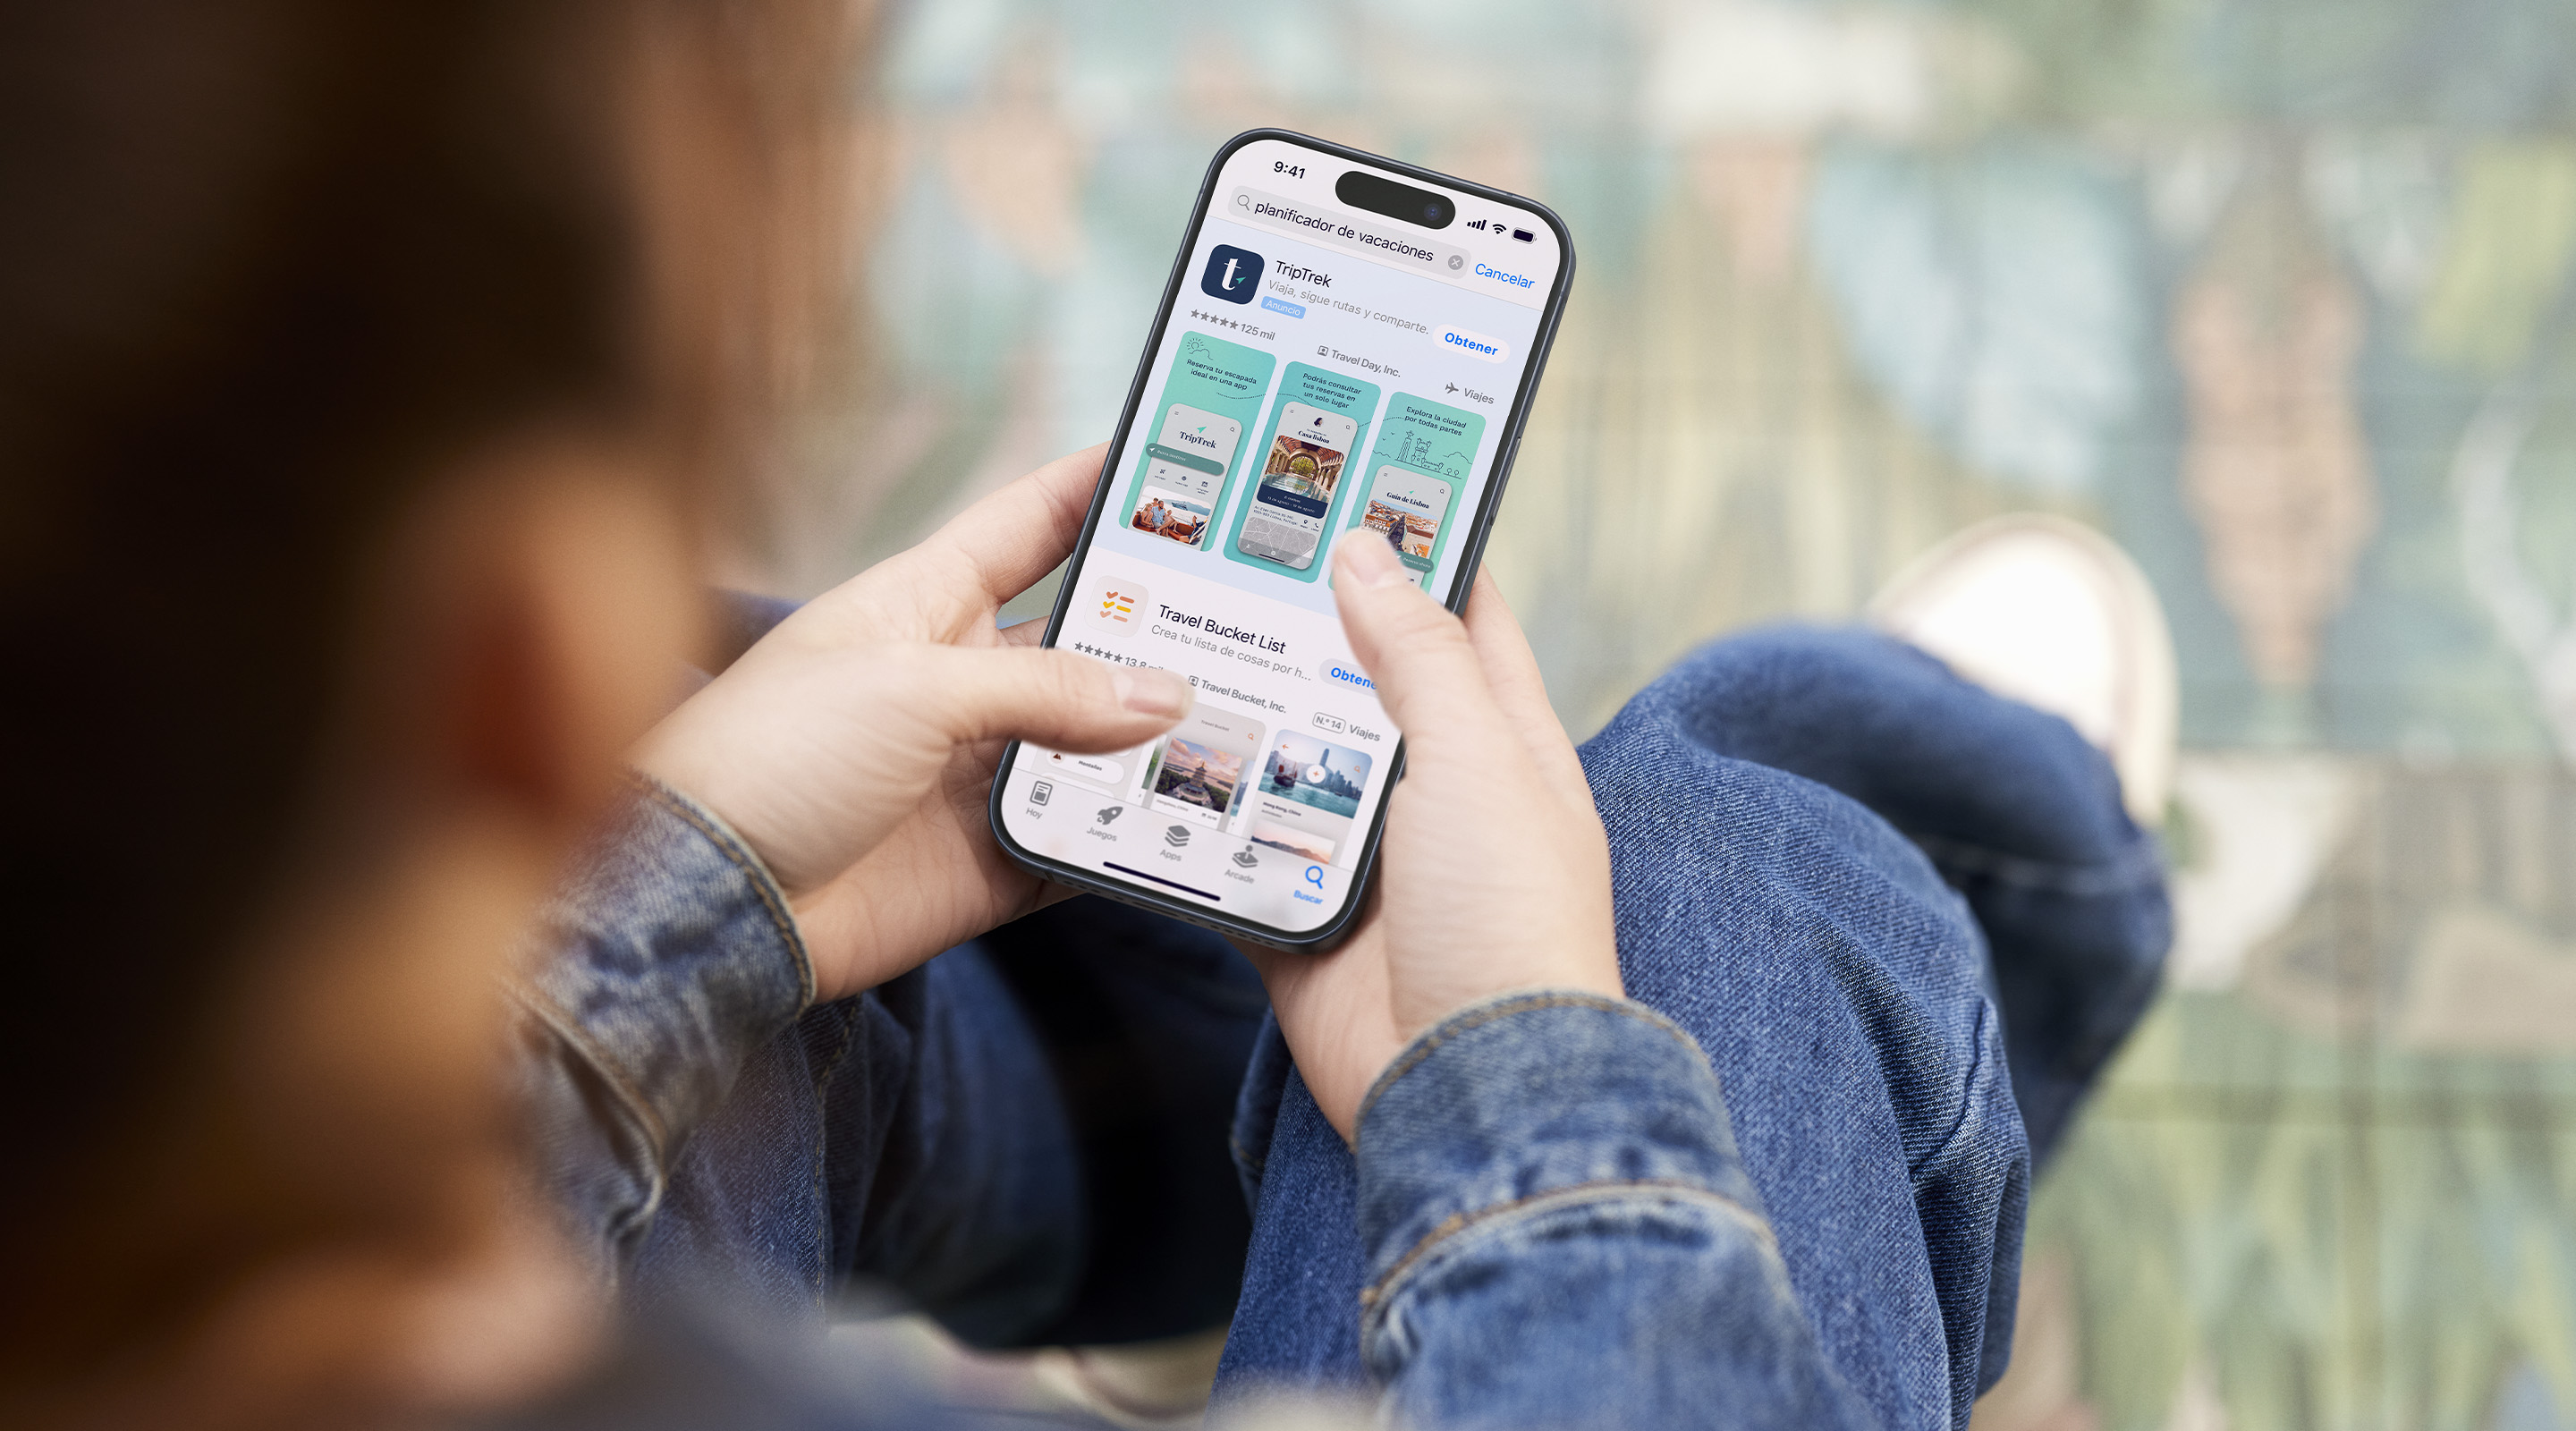 Dos manos que sostienen un iPhone. El App Store se abre en un anuncio de resultados de búsqueda de la app de ejemplo TripTrek con el término «planificador de vacaciones» introducido en el cuadro de búsqueda.